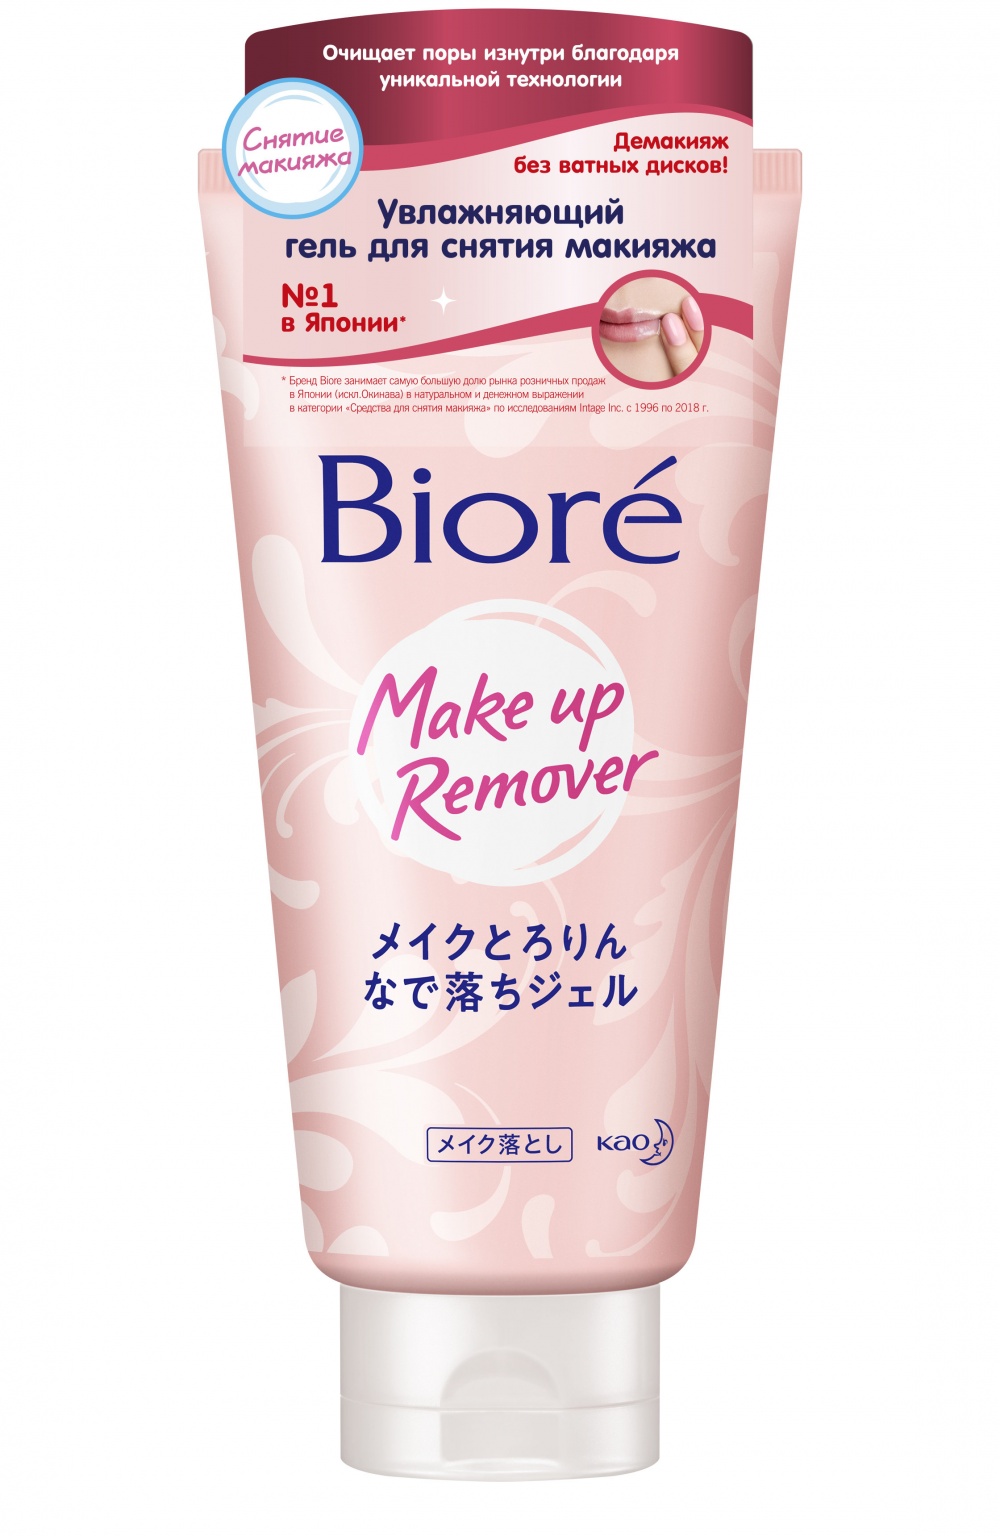 Лот мицеллярная вода и увлажняющий гель для снятия макияжа BIORE.